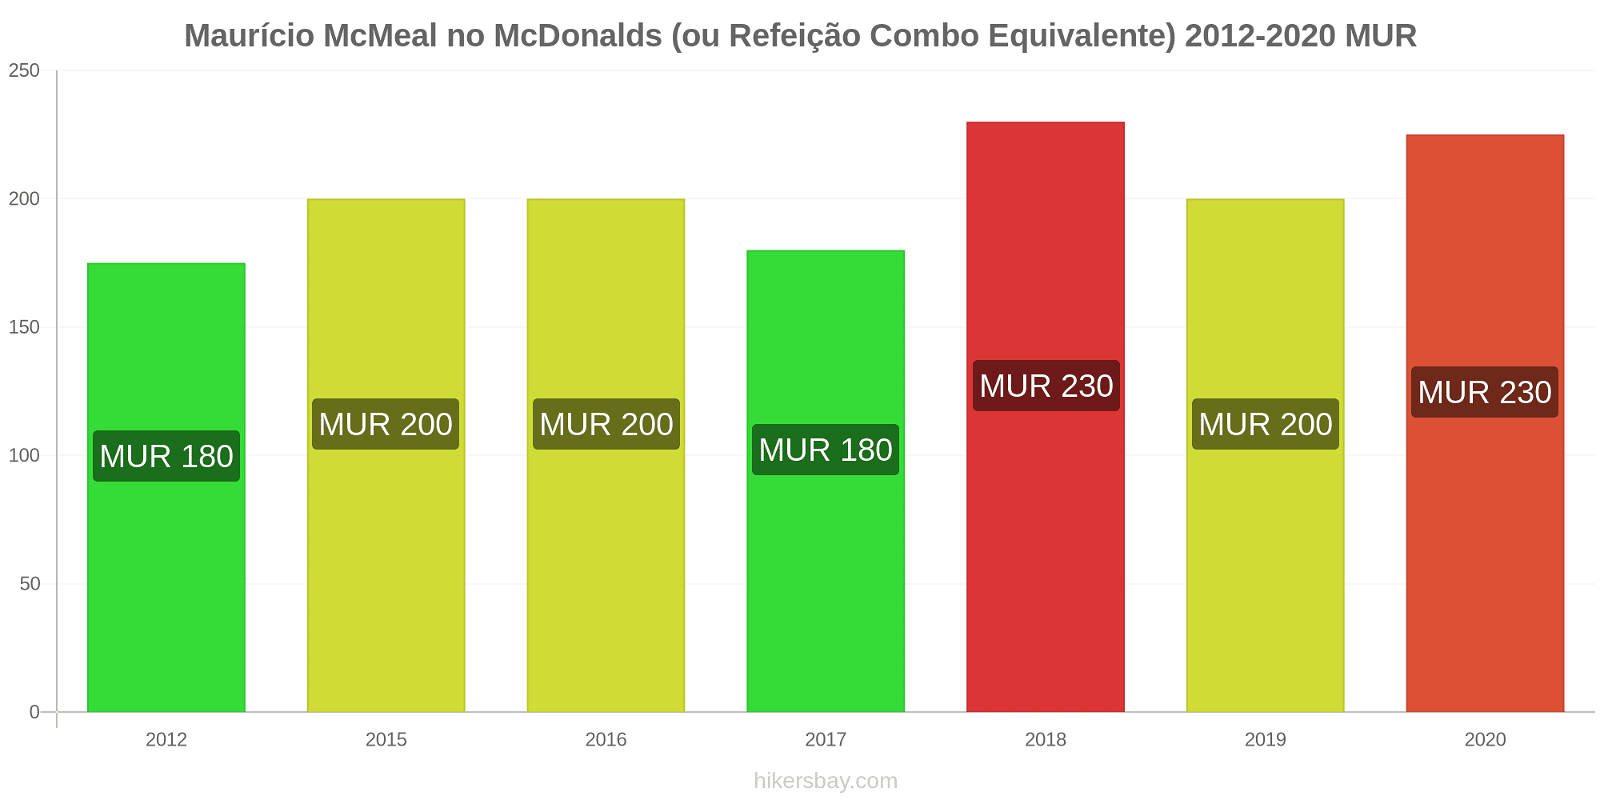 Maurício variação de preço McMeal no McDonald ' s (ou refeição Combo equivalente) hikersbay.com